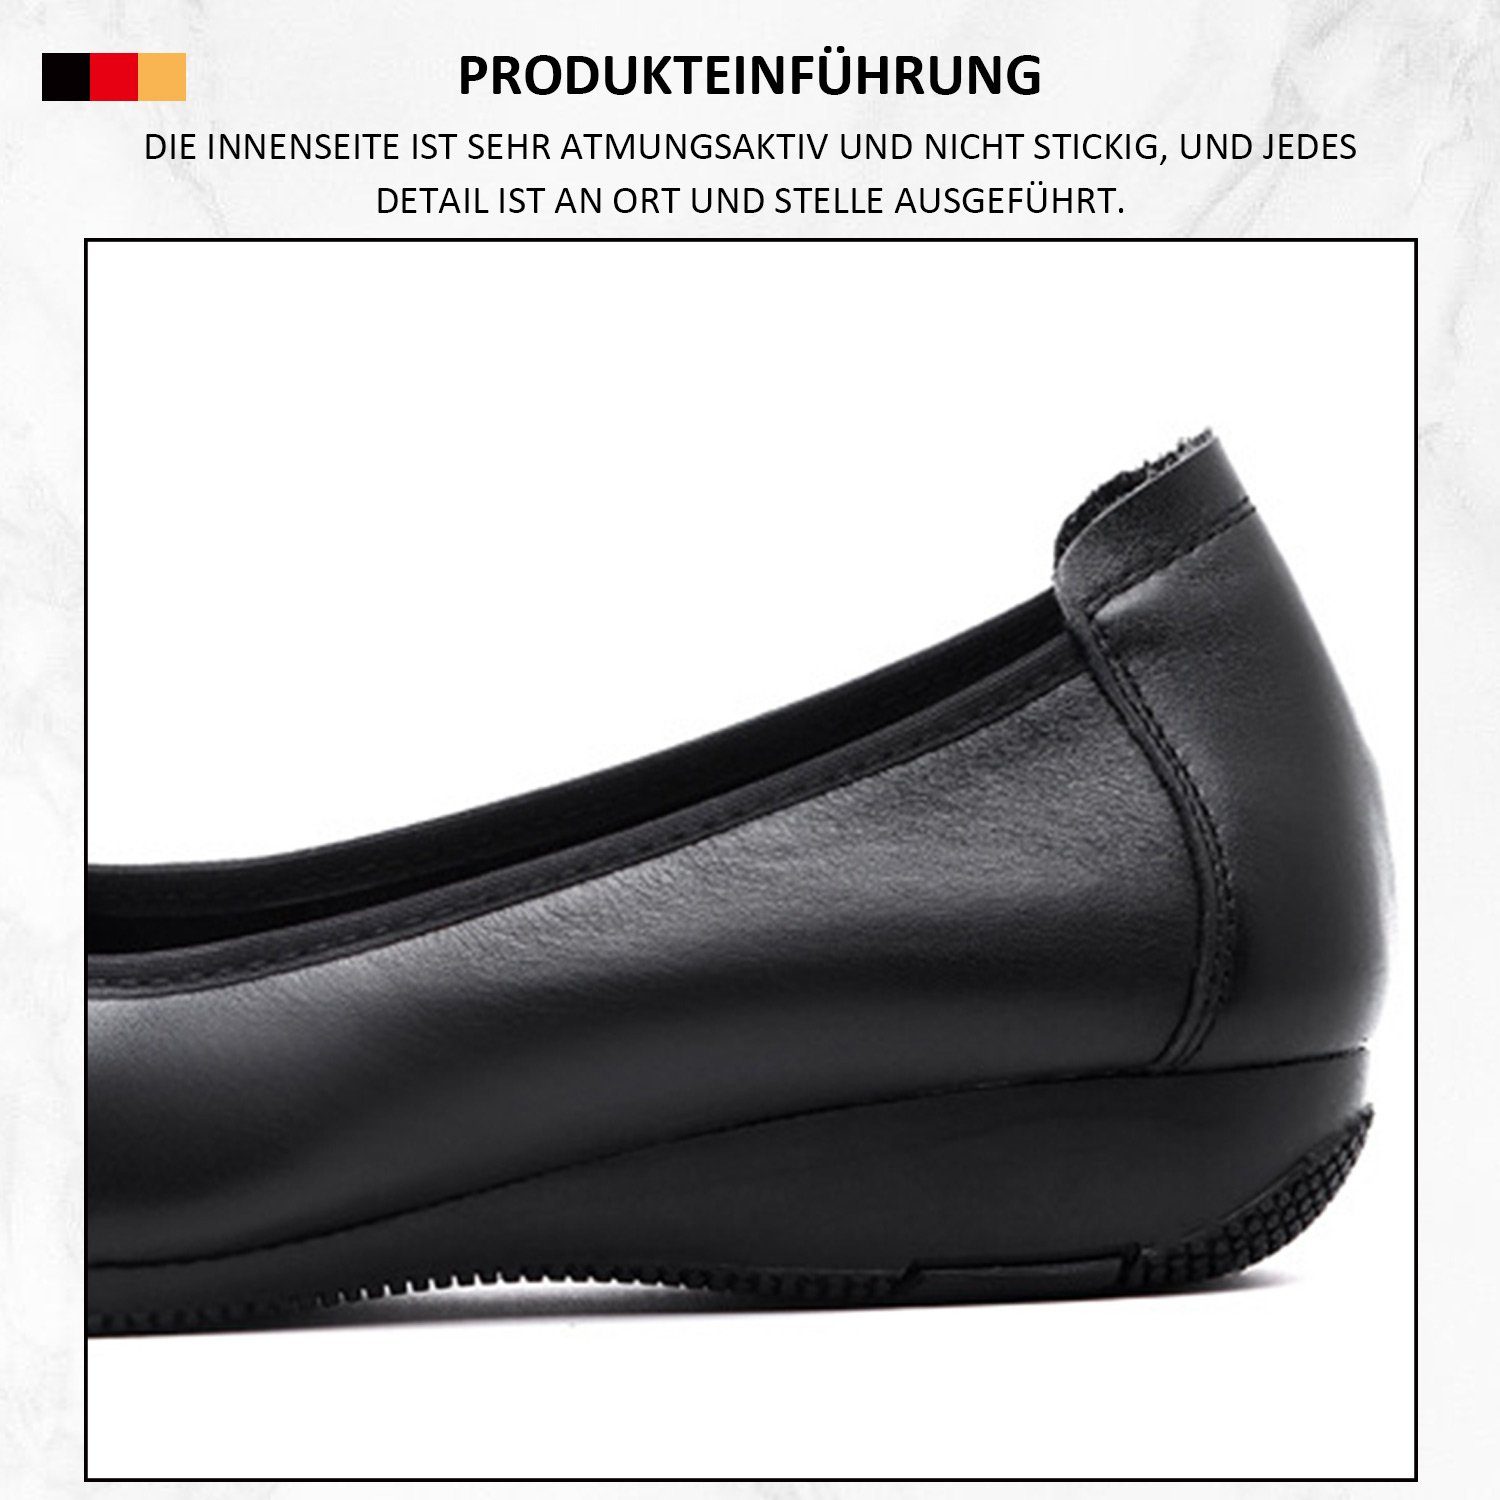 Bequeme geschlossener Schwarz runder Schuhe klassischer Zehenpartie Pumps MAGICSHE Frauen in formelle Linie mit Pumps